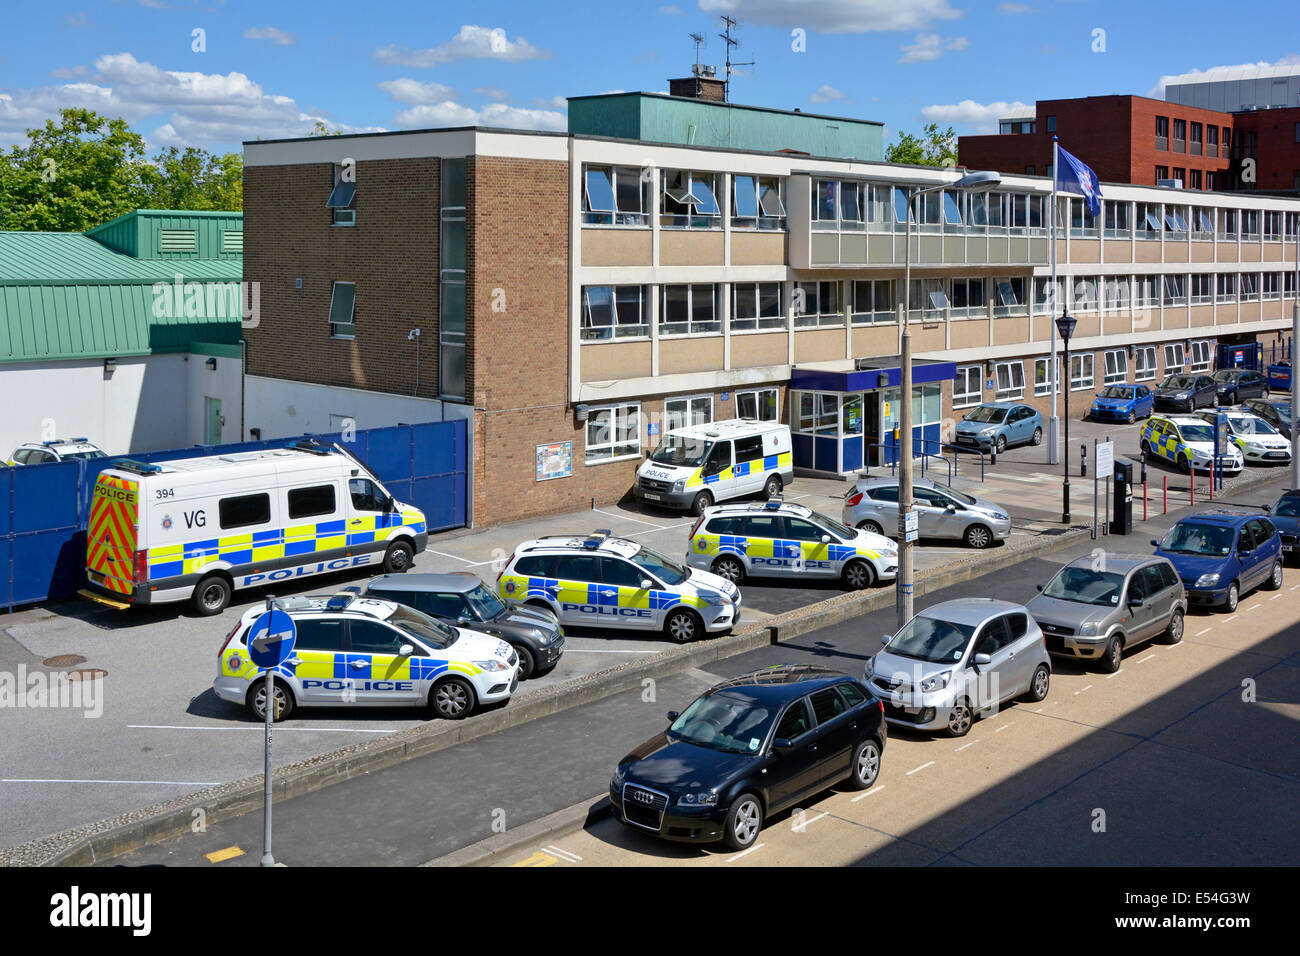 Vue de dessus regardant vers le bas les voitures de police assorties et les fourgonnettes garées à l'extérieur de l'entrée de l'immeuble de bureaux Basildon poste de police Essex Angleterre Royaume-Uni Banque D'Images